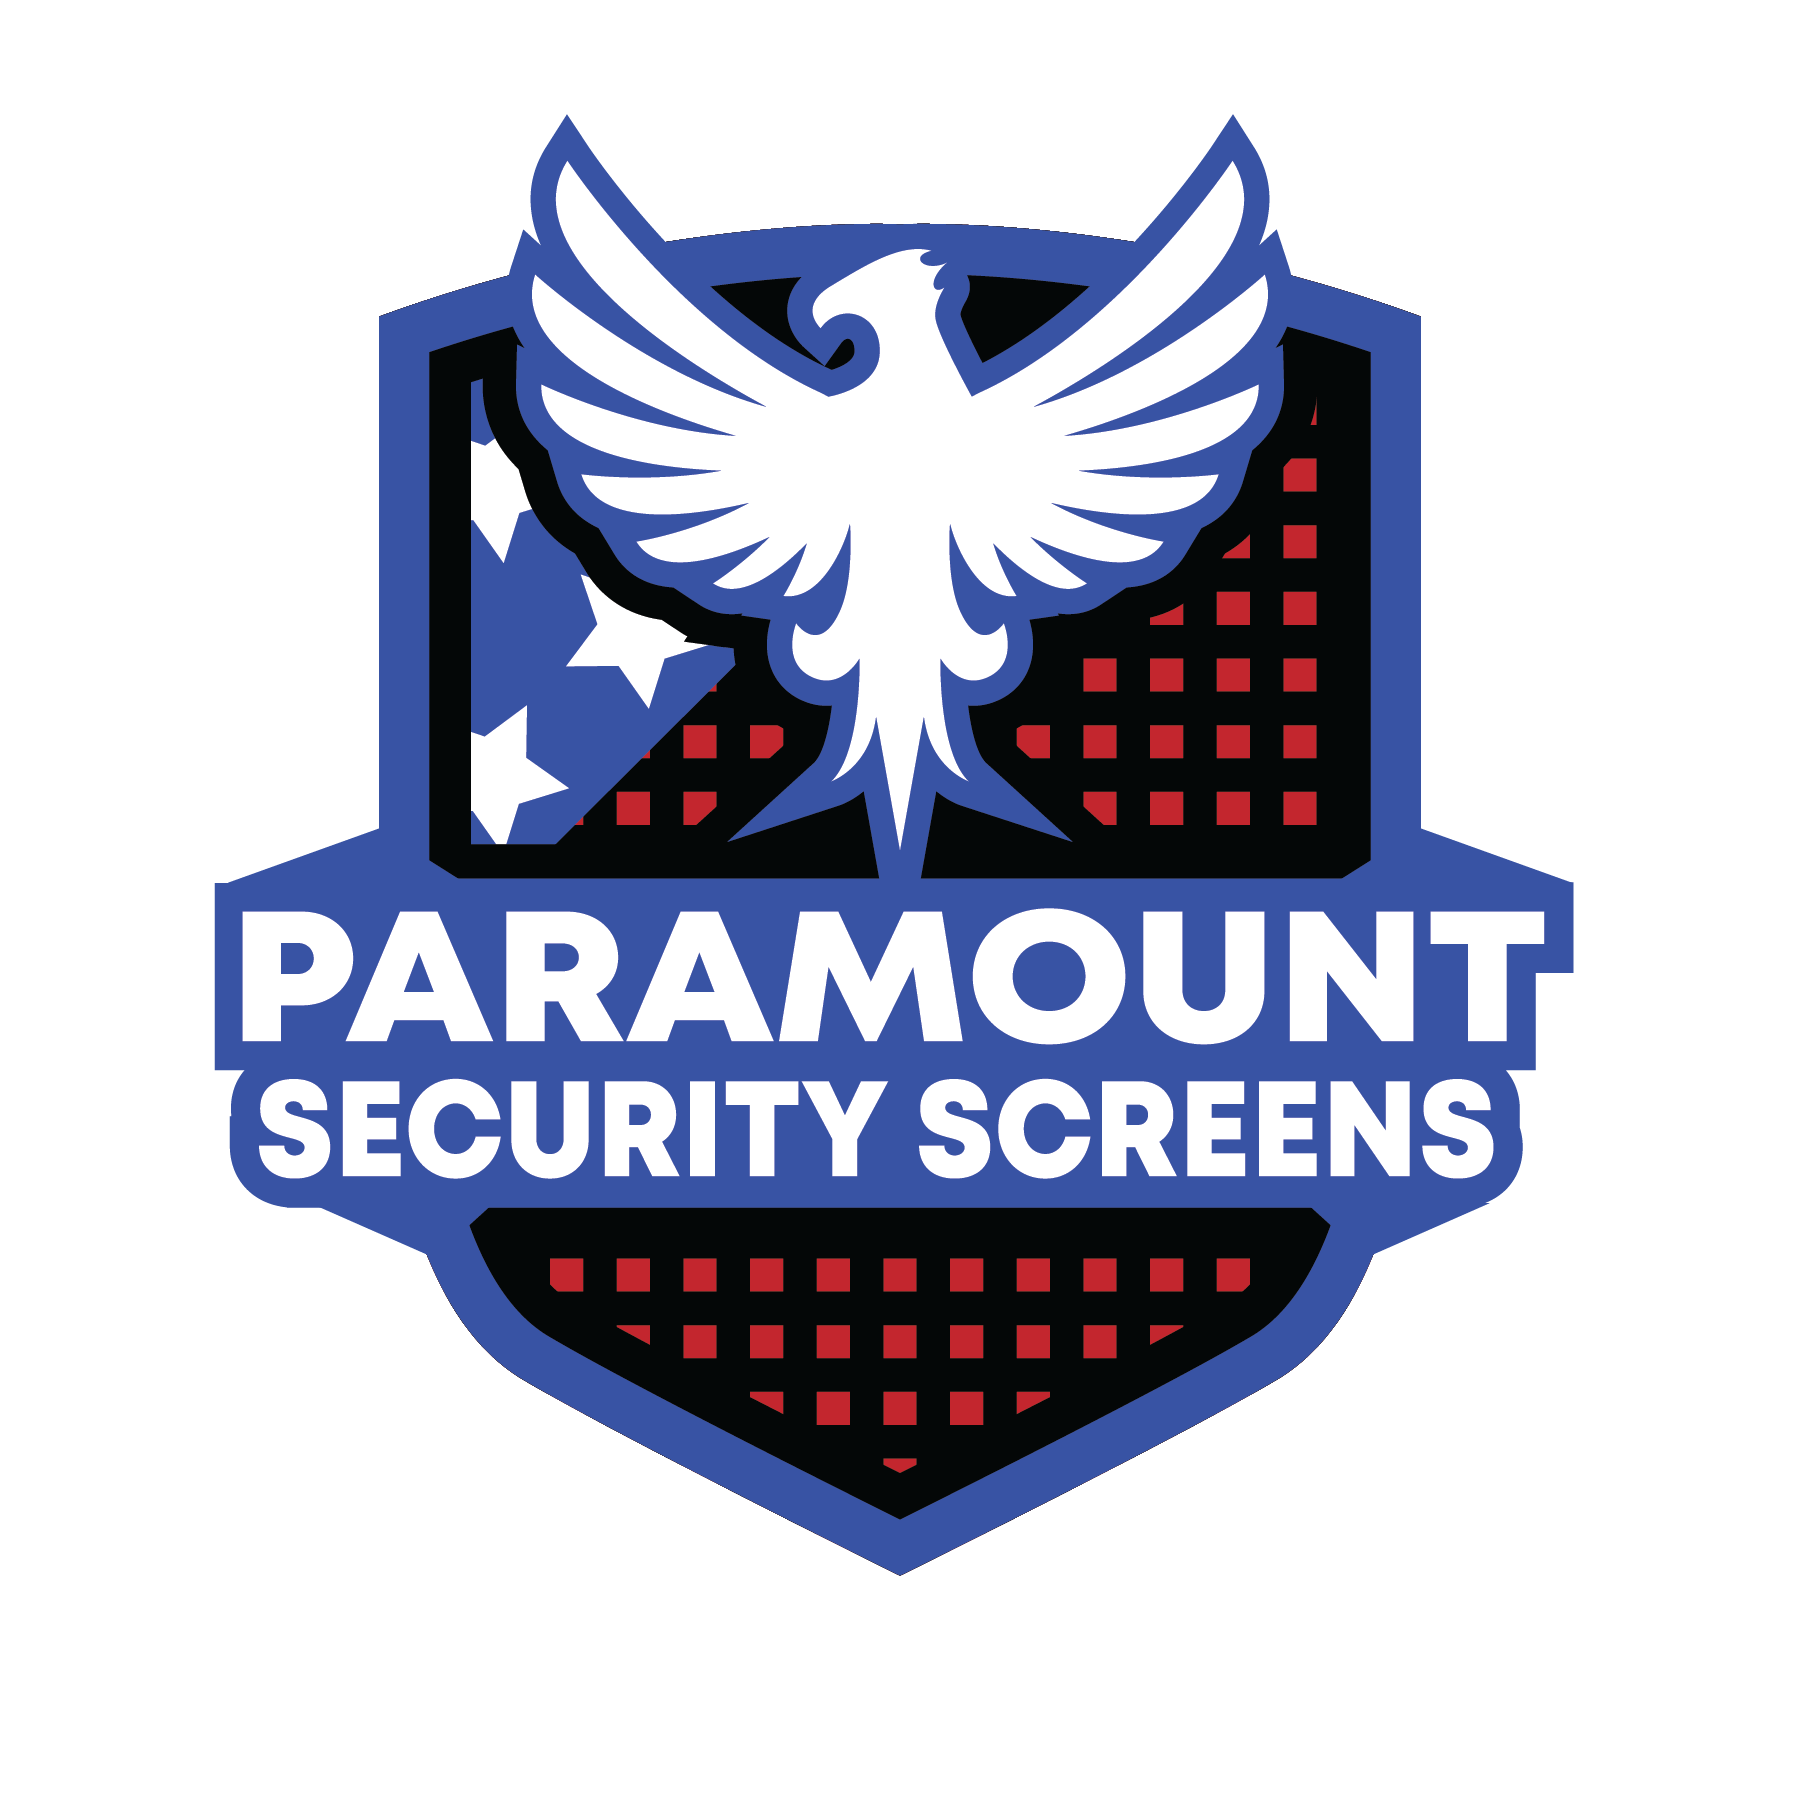 Paramount Security Screens - Phoenix, AZ - (480)400-6449 | ShowMeLocal.com